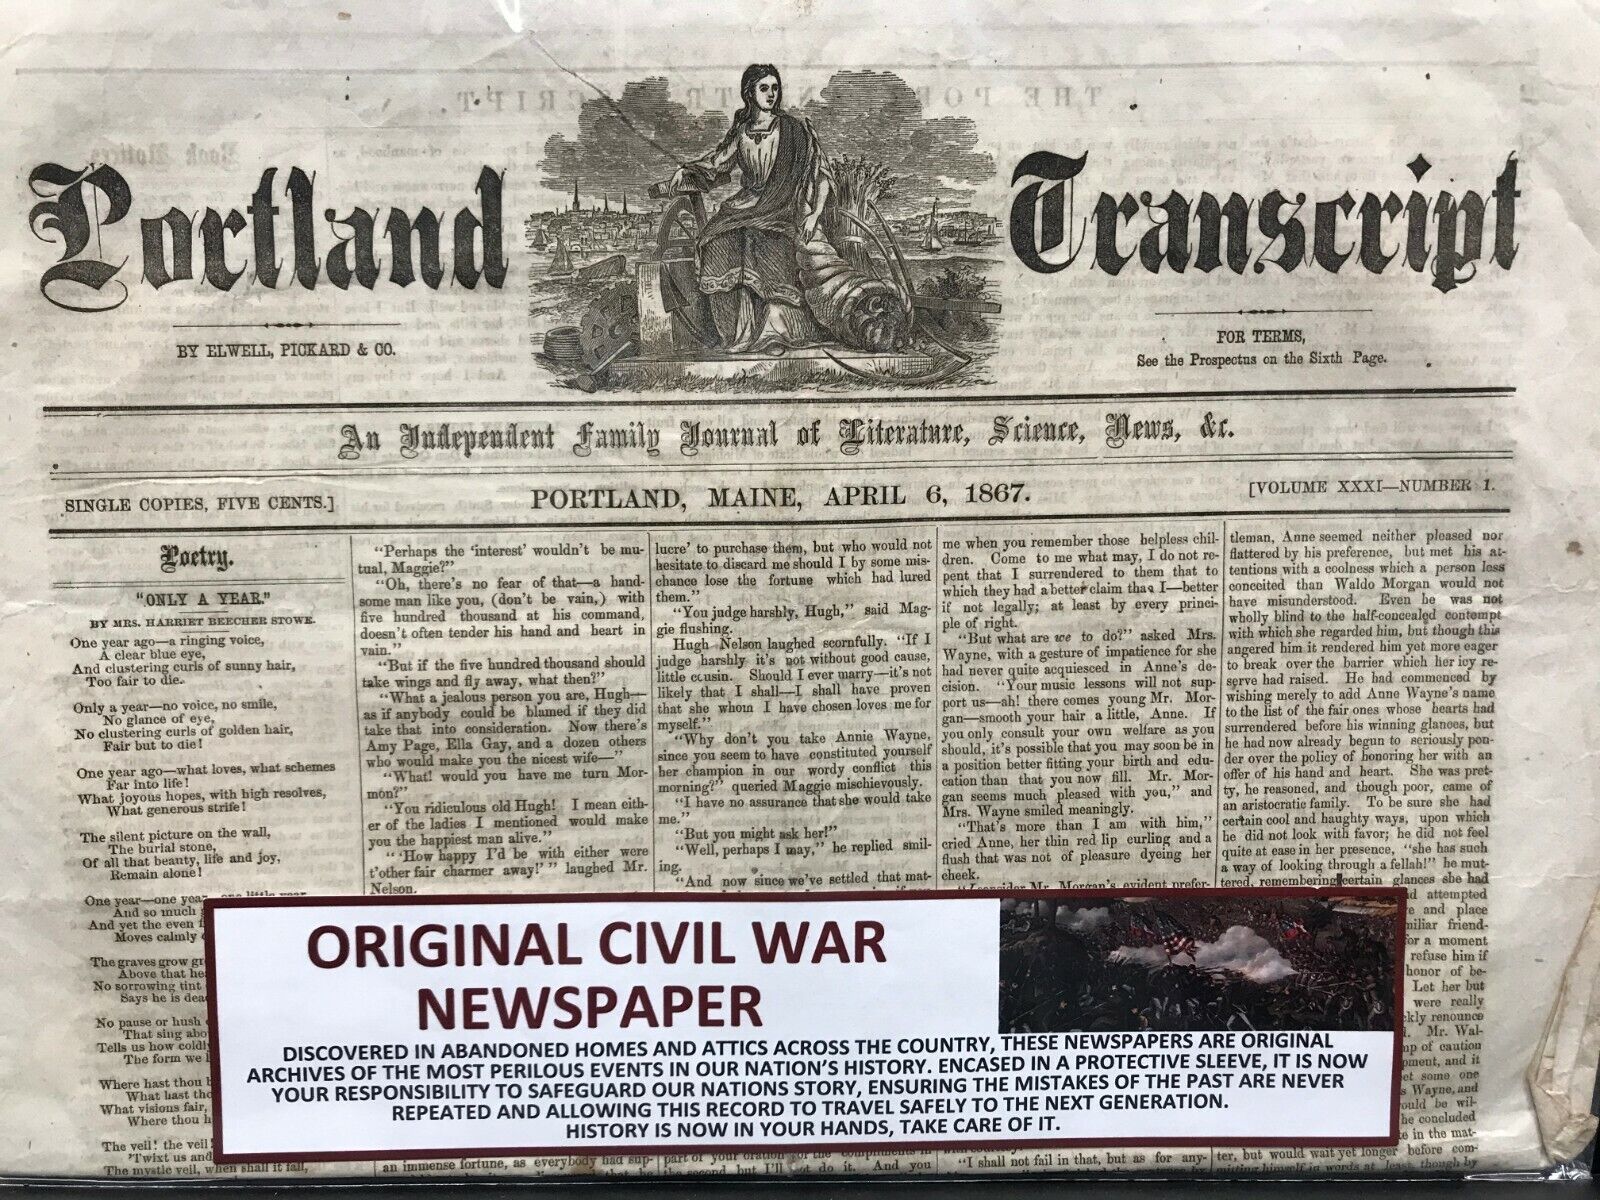 Original POST Civil War Newspaper - Portland Transcript - April 6, 1867